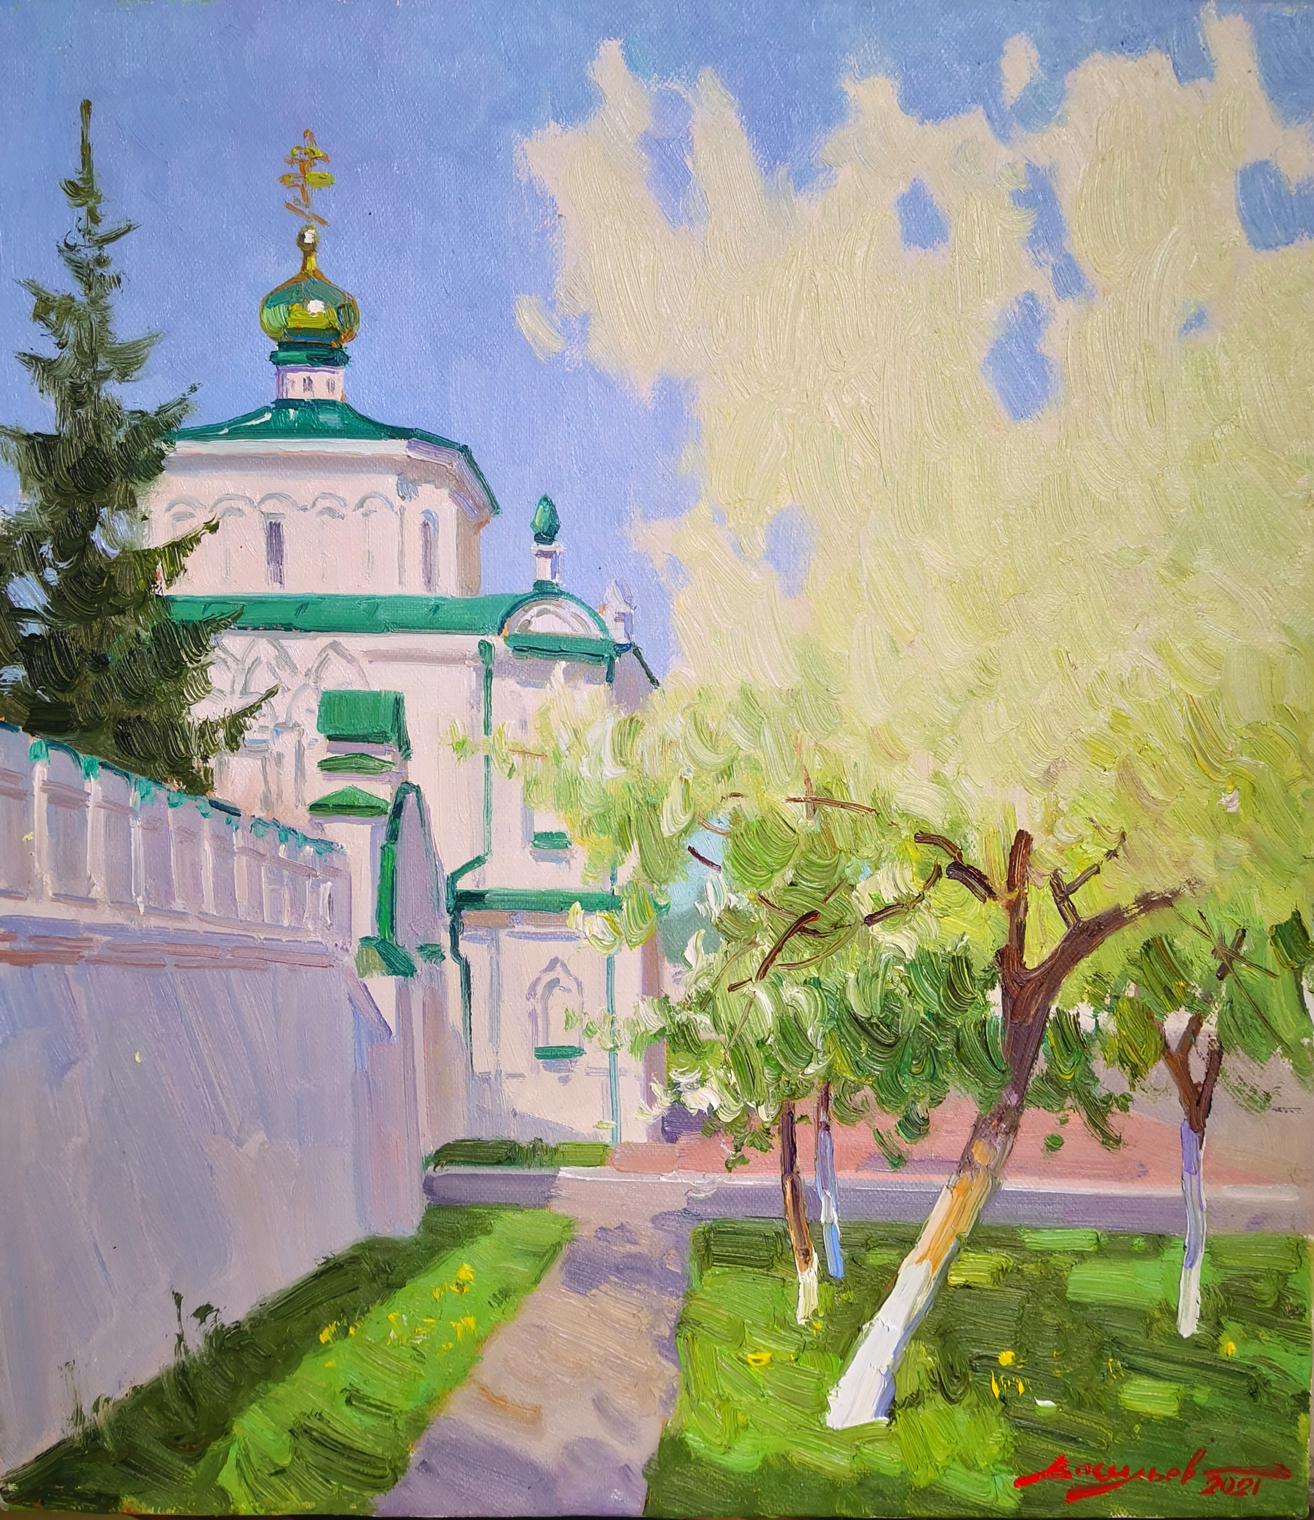 Verkhoturya Color - 1, Dmitry Vasiliev, Buy the painting Oil